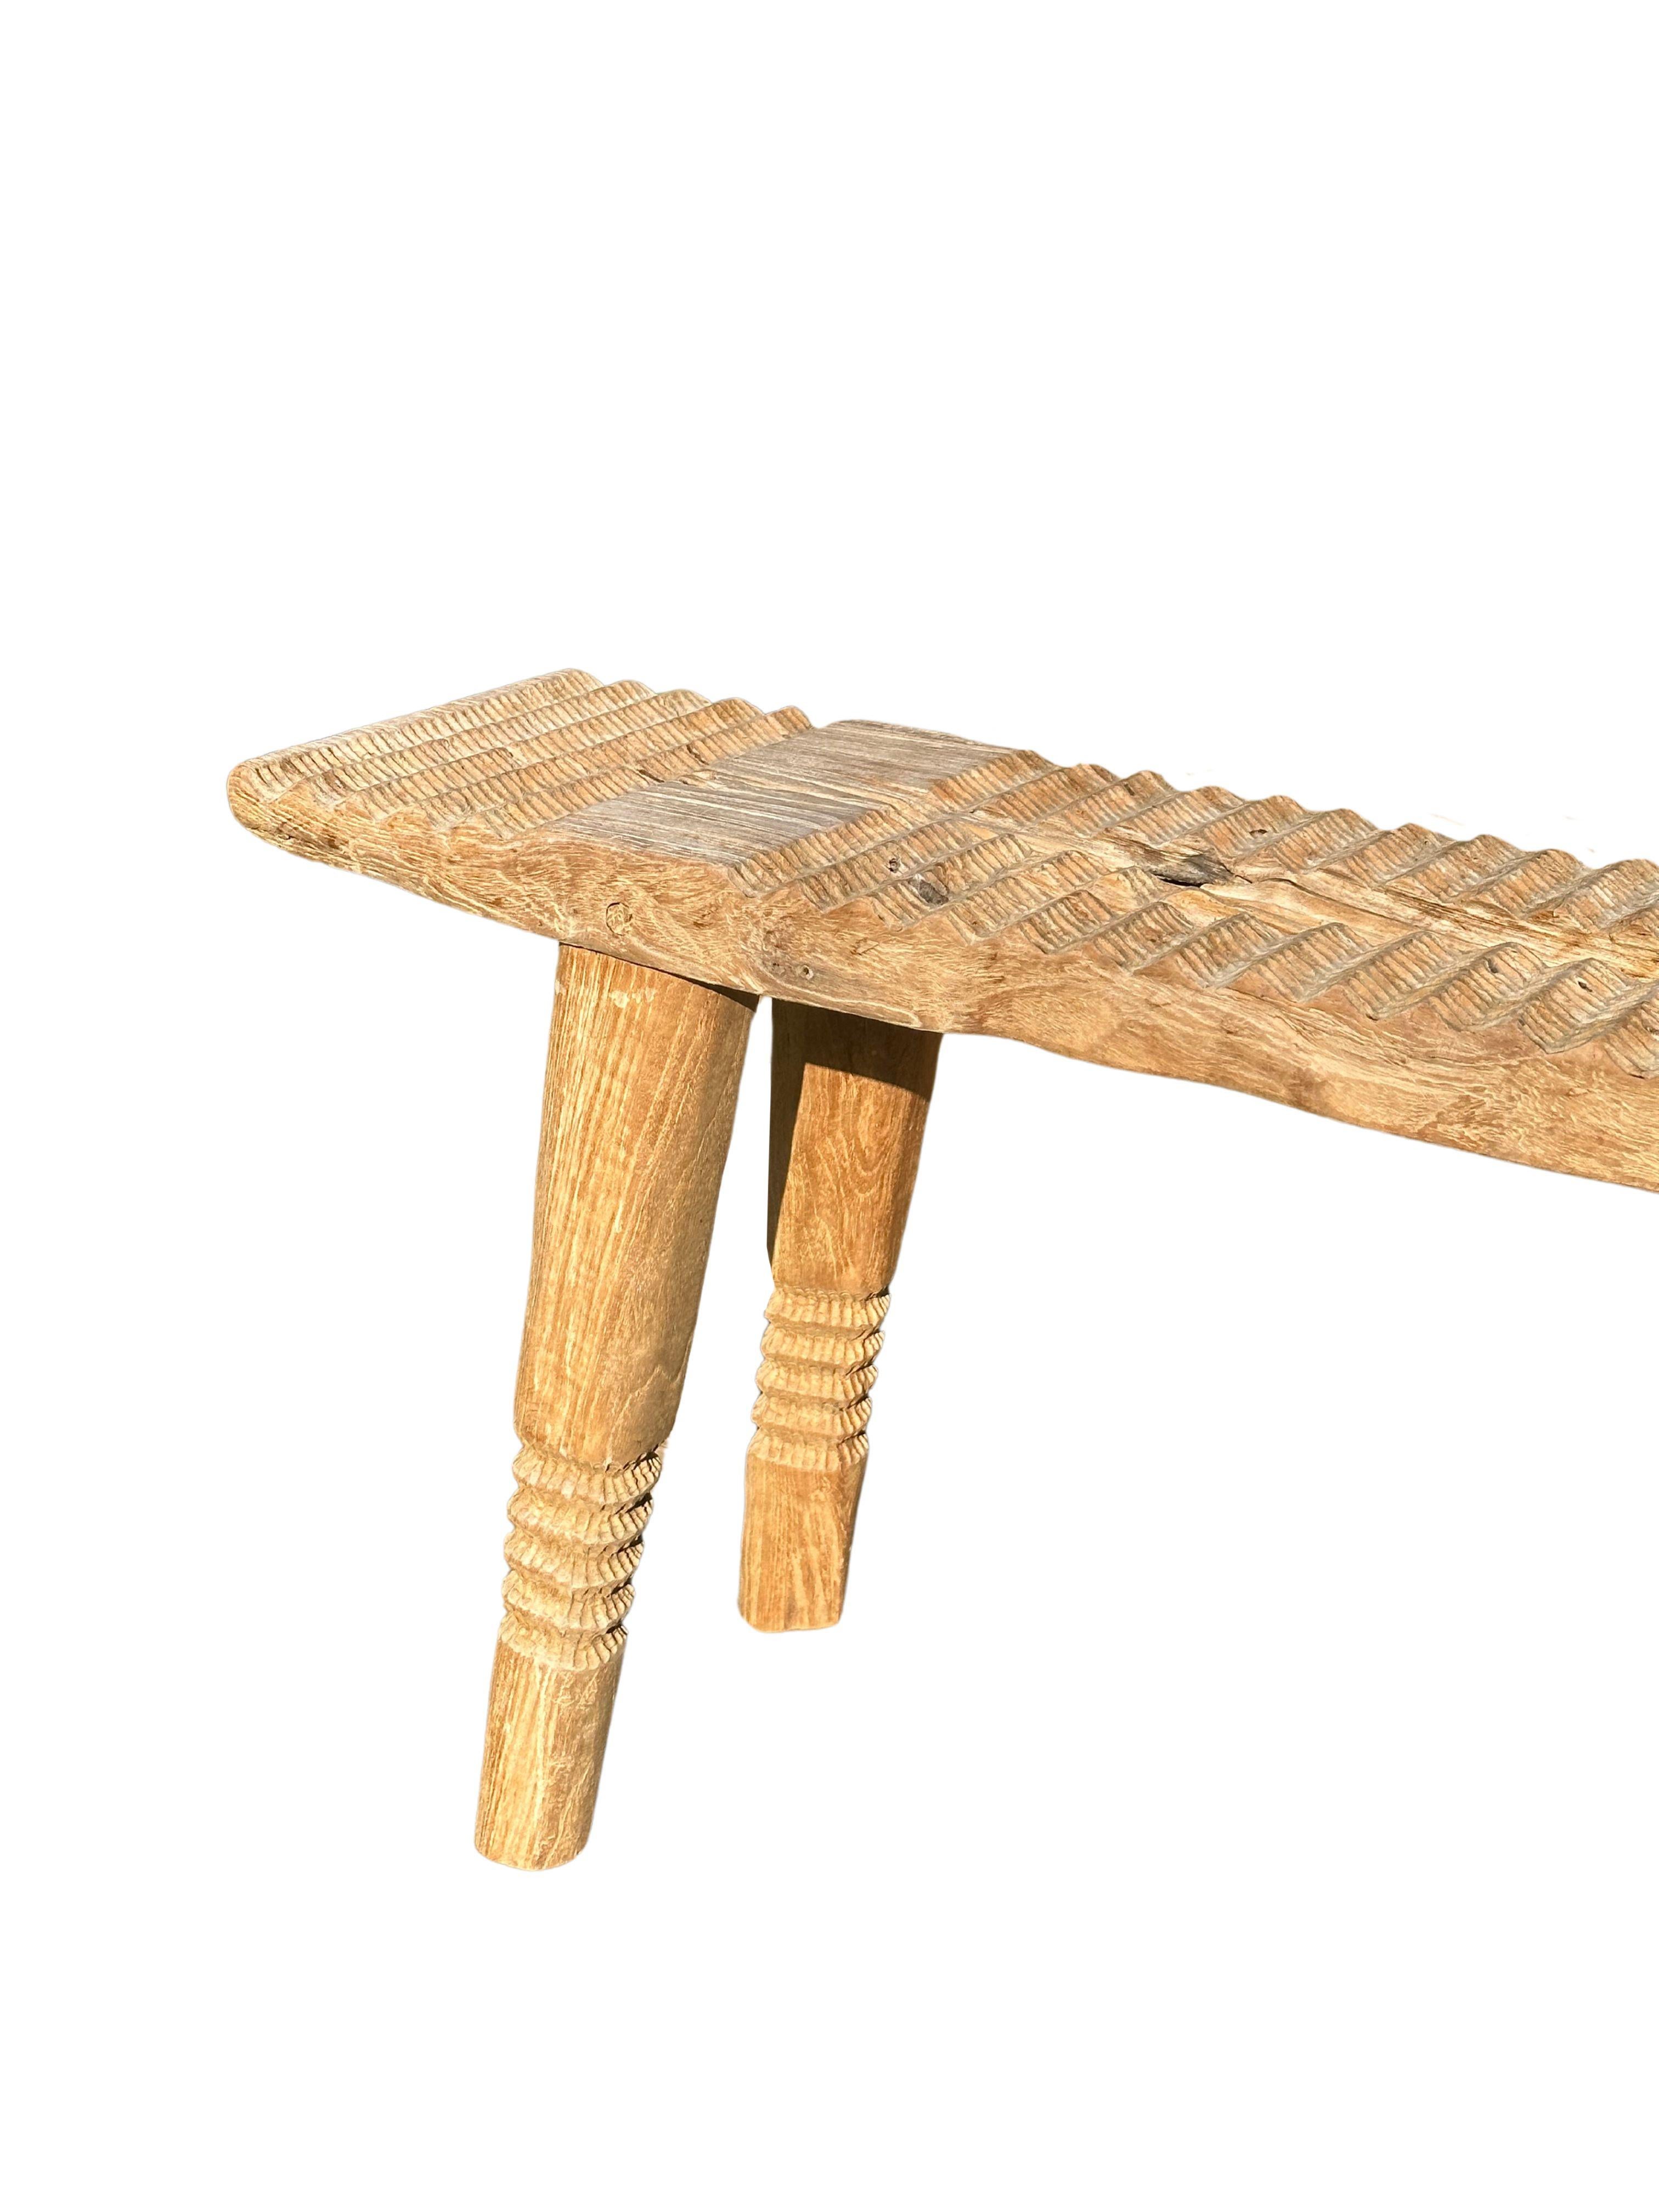 Indonesian Teak Wood Sculptural Bench, Carved Detailing, Modern Organic For Sale